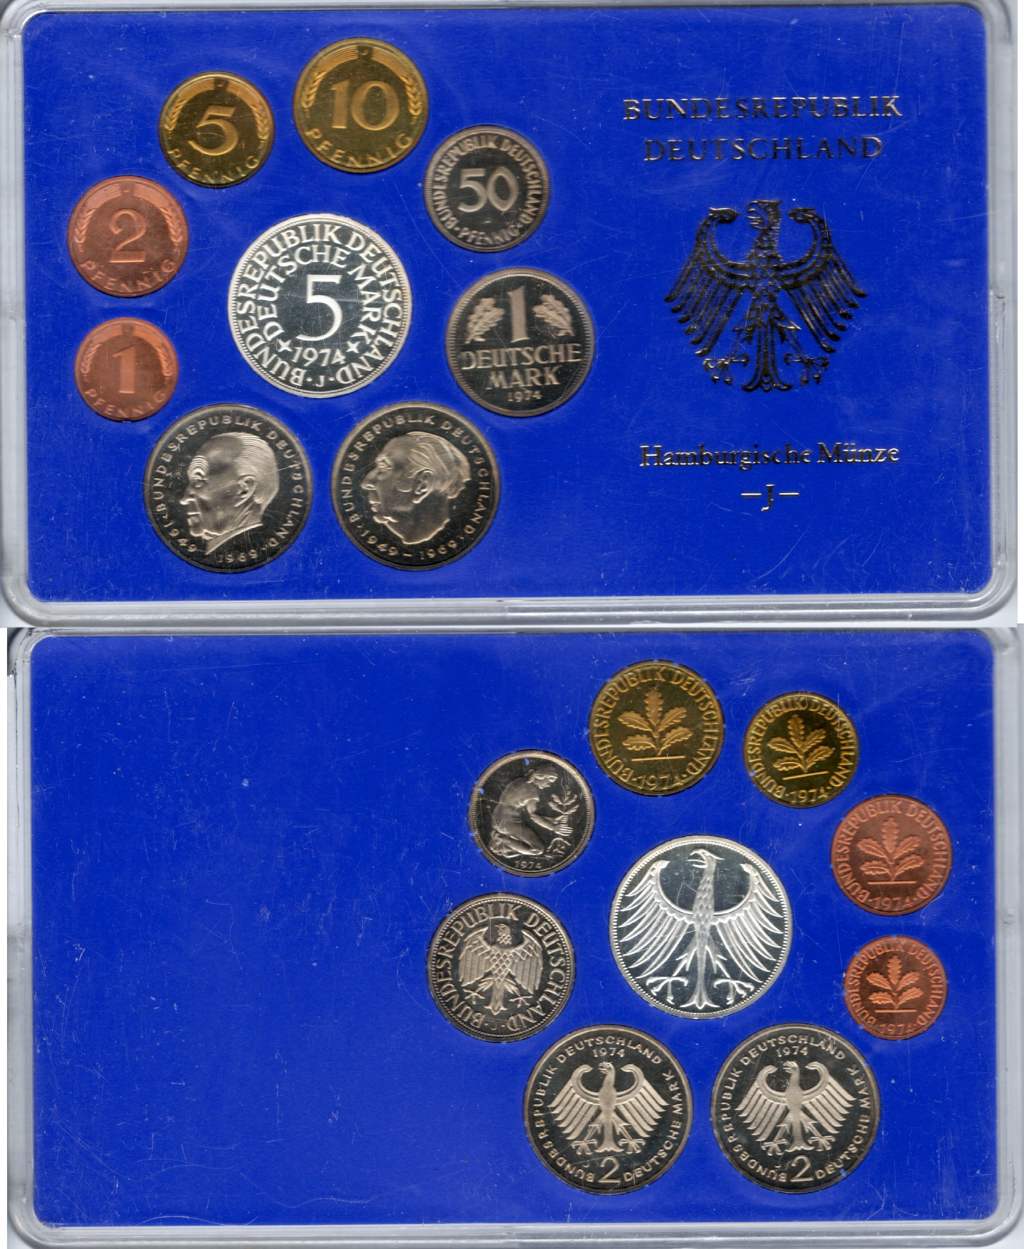 BRD Polierte Platte Kursmünzensatz 1974 J OVP